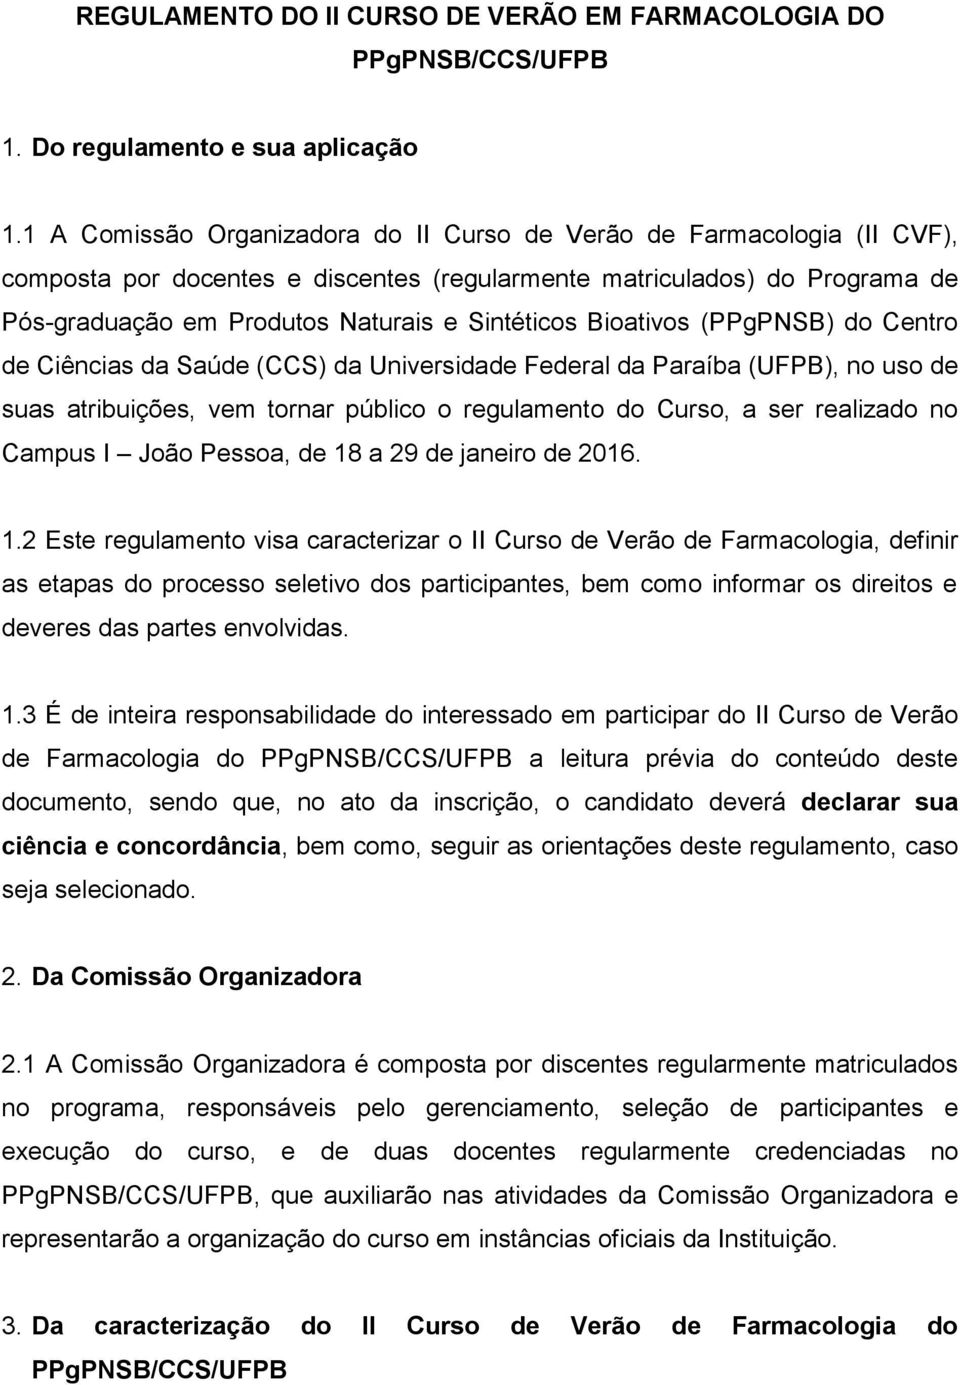 Bioativos (PPgPNSB) do Centro de Ciências da Saúde (CCS) da Universidade Federal da Paraíba (UFPB), no uso de suas atribuições, vem tornar público o regulamento do Curso, a ser realizado no Campus I